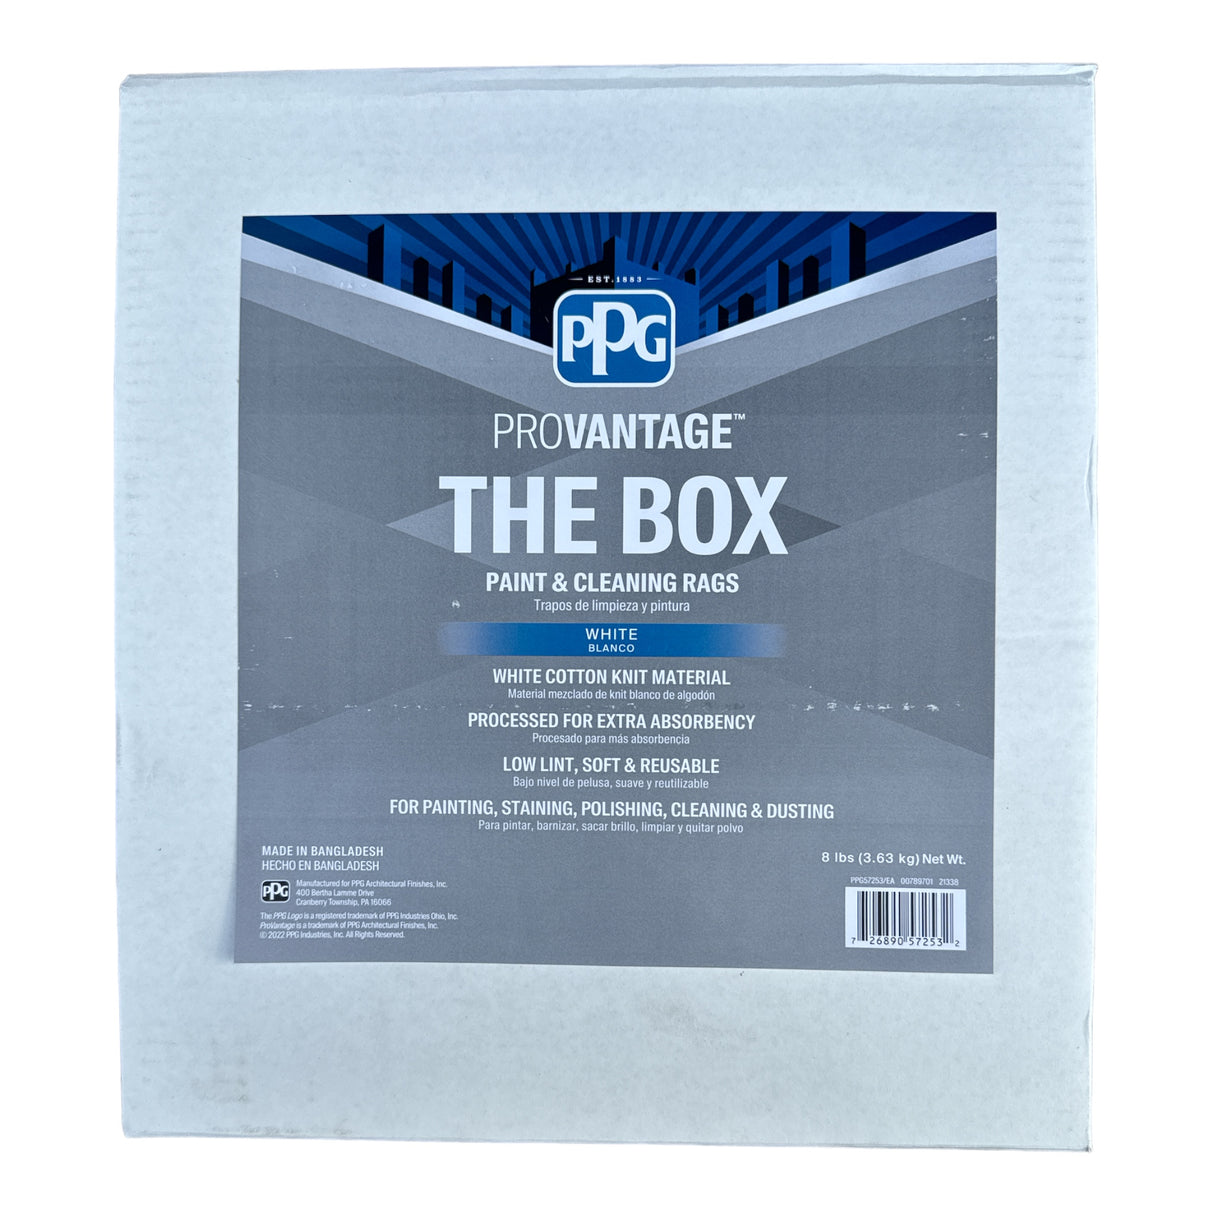 Trapos de limpieza y pintura PPG ProVantage “The Box”